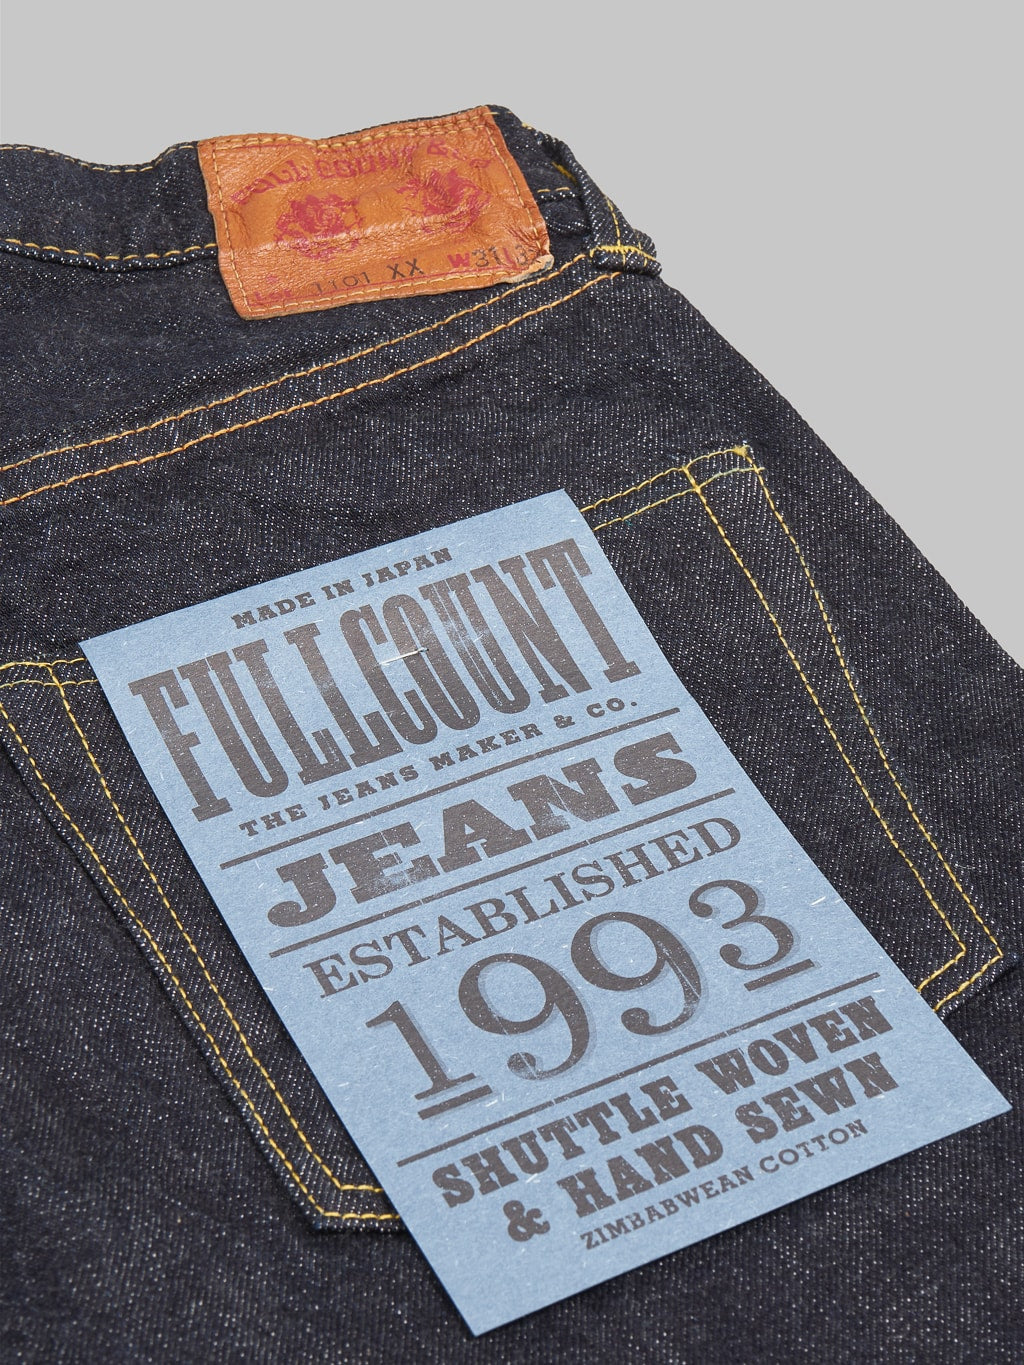 Fullcount 1101XXW regular Straight selvedge Jeans pocket flasher